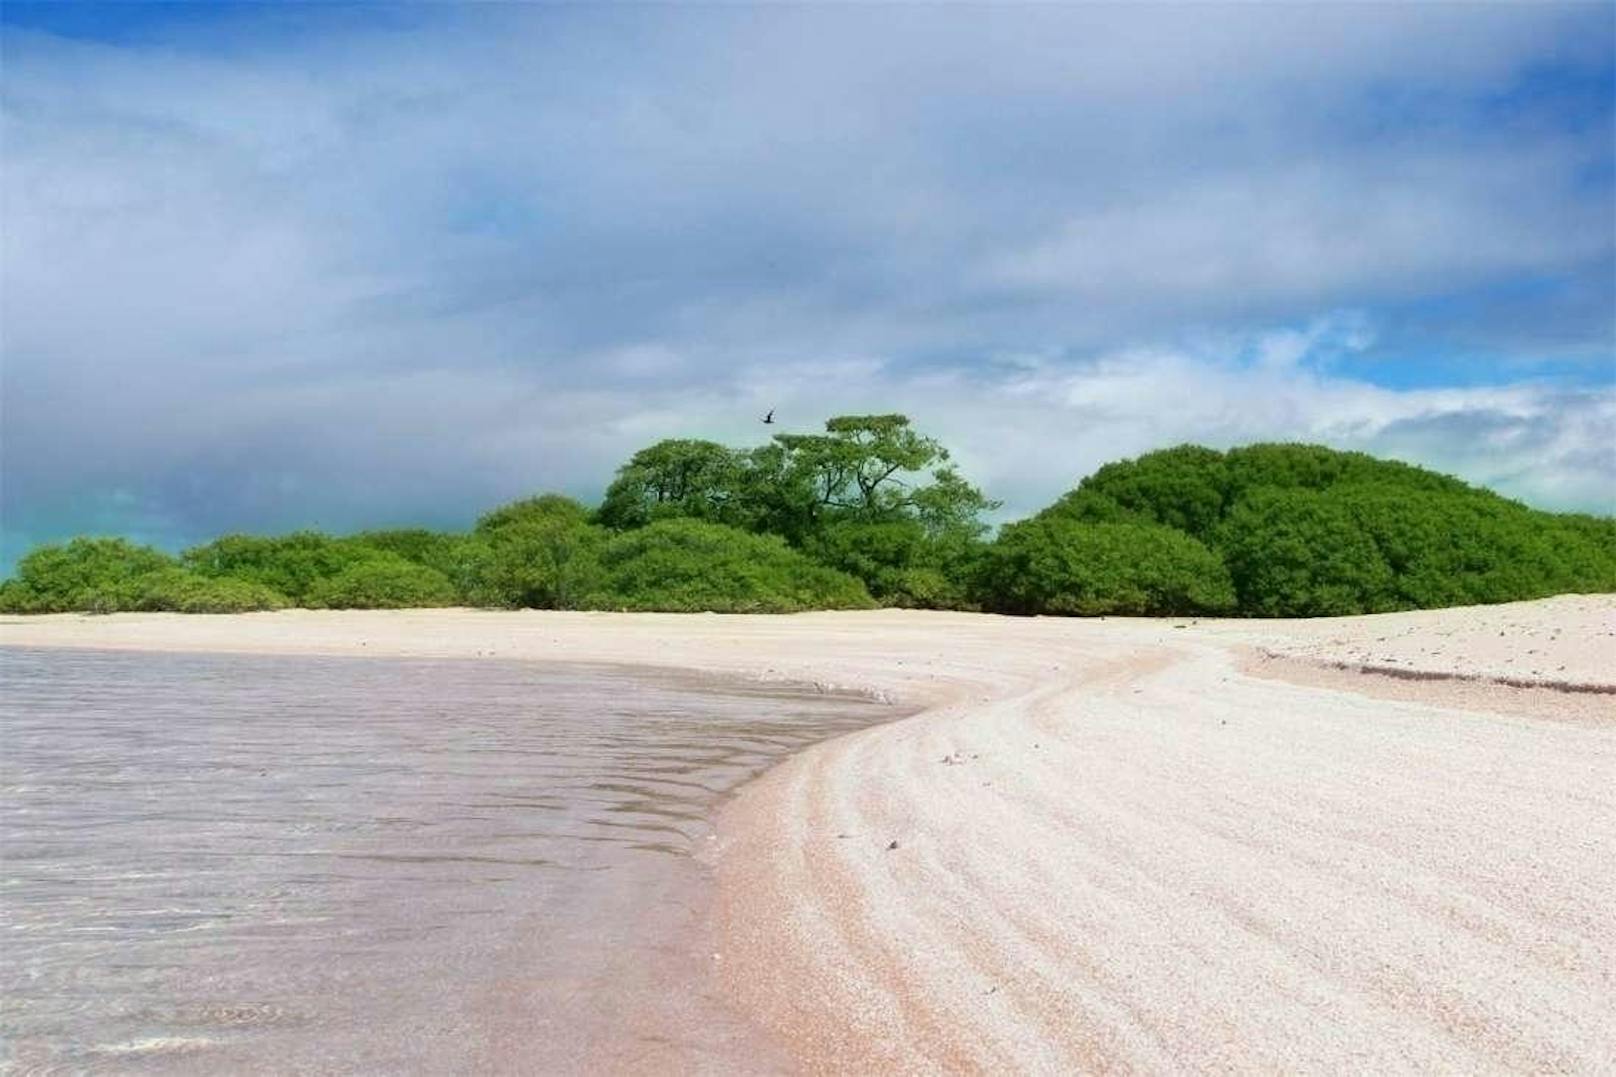 Die Insel befindet sich rund 10 Minuten von der berühmten blauen Lagune Rangiroa entfernt. Kostenpunkt: 234.643 Euro